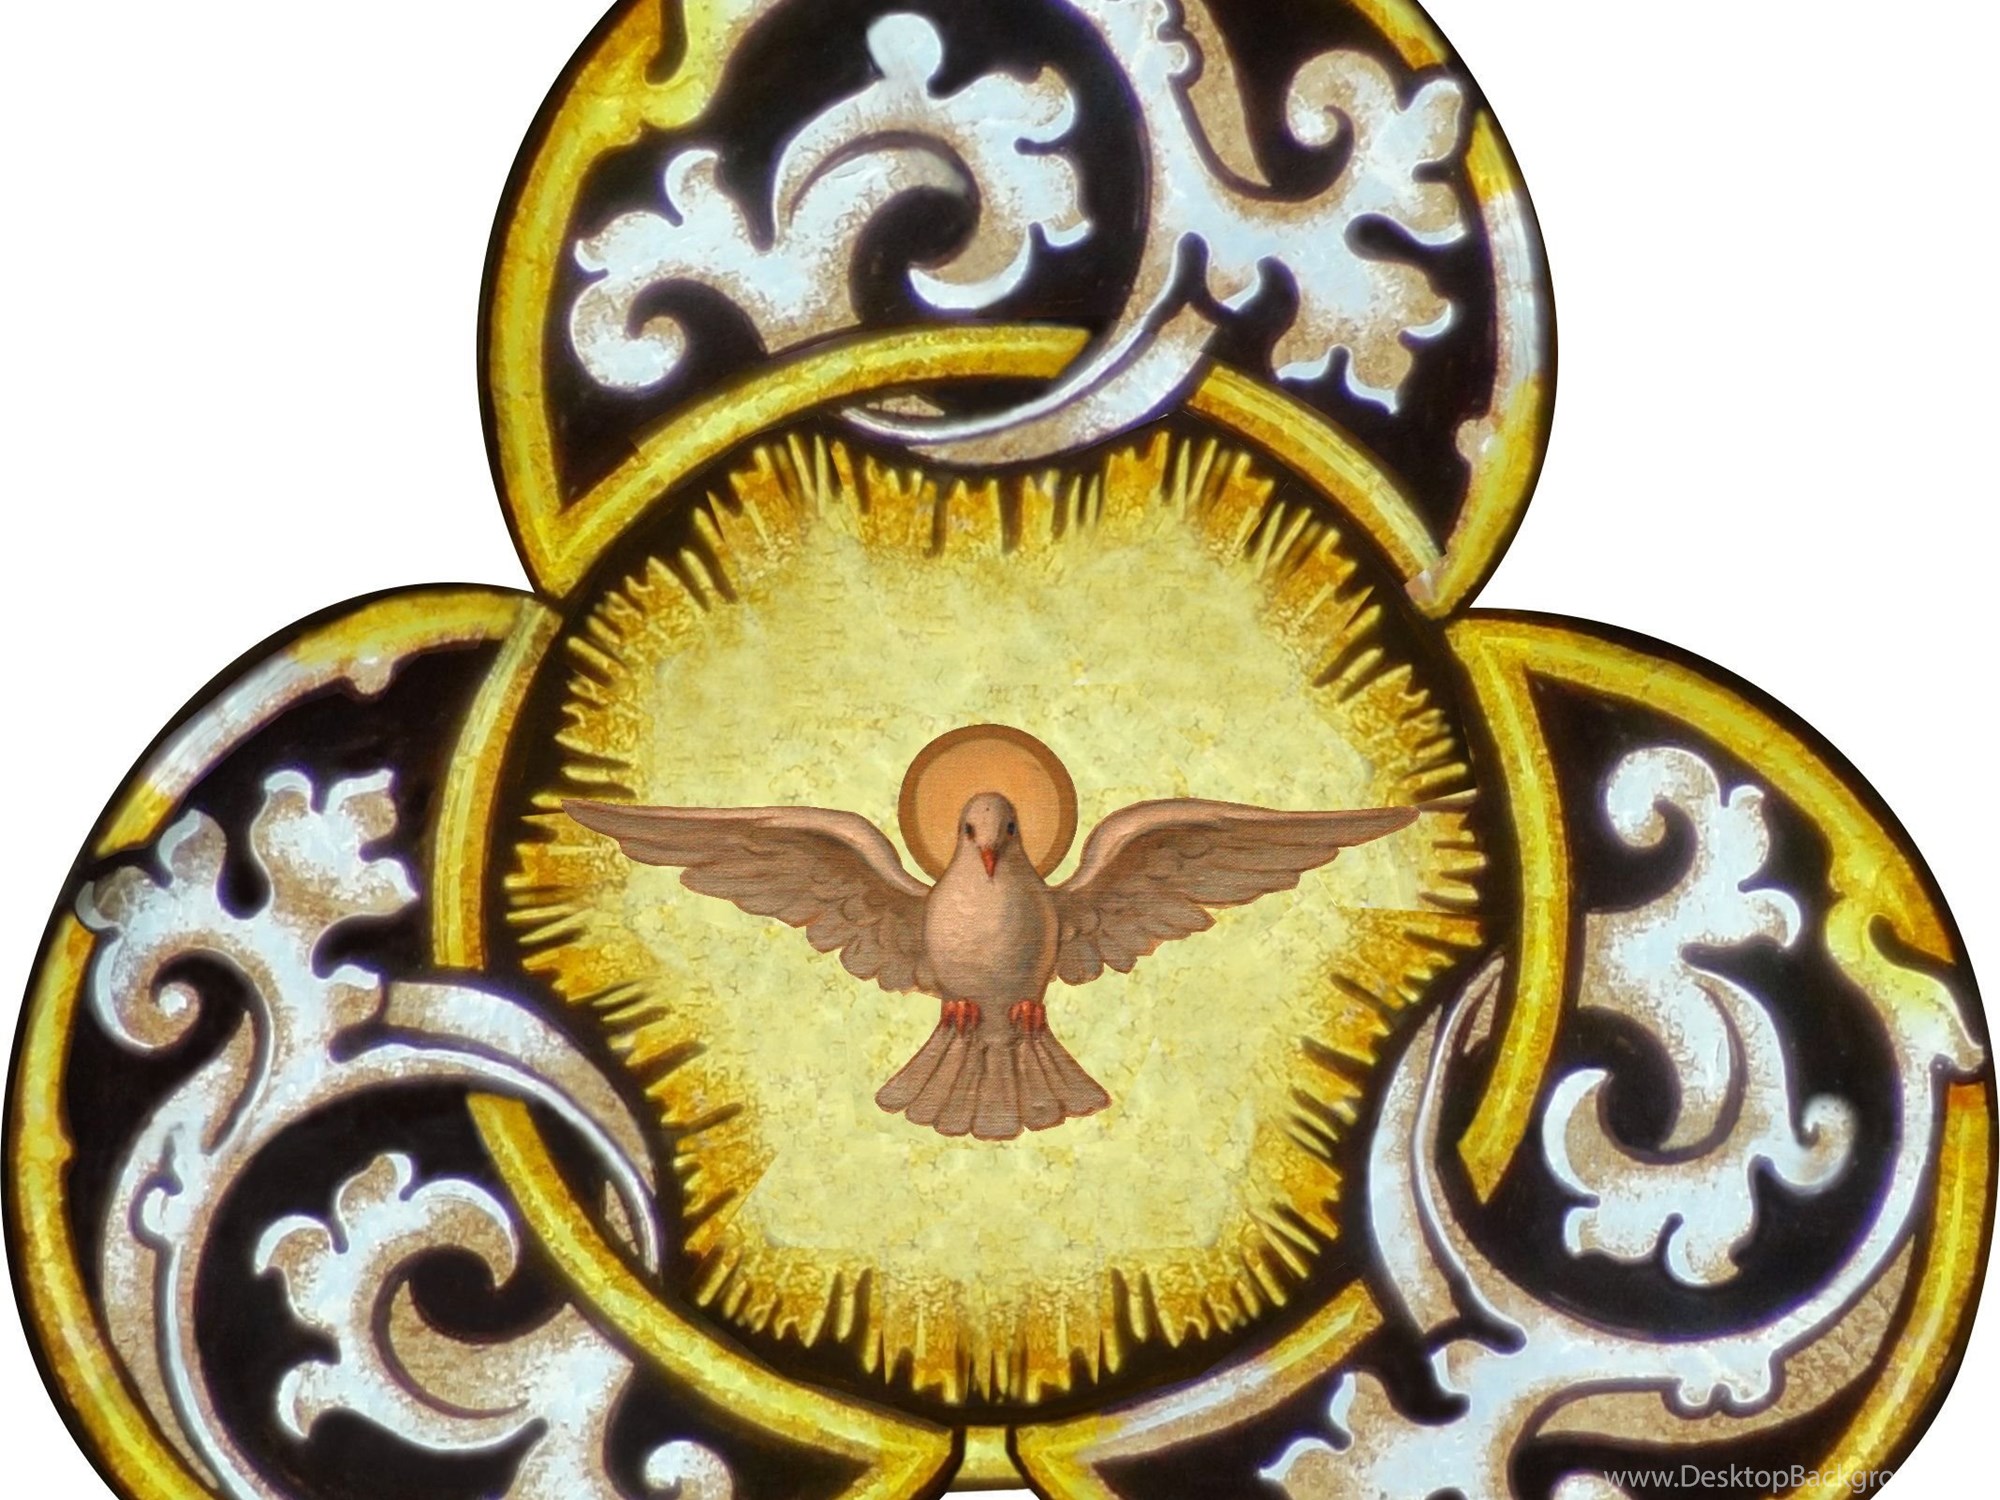 Св дух. Иконография Креста Святого духа. Святой дух. Символ Святого духа в христианстве. Голубь символ Святого духа.